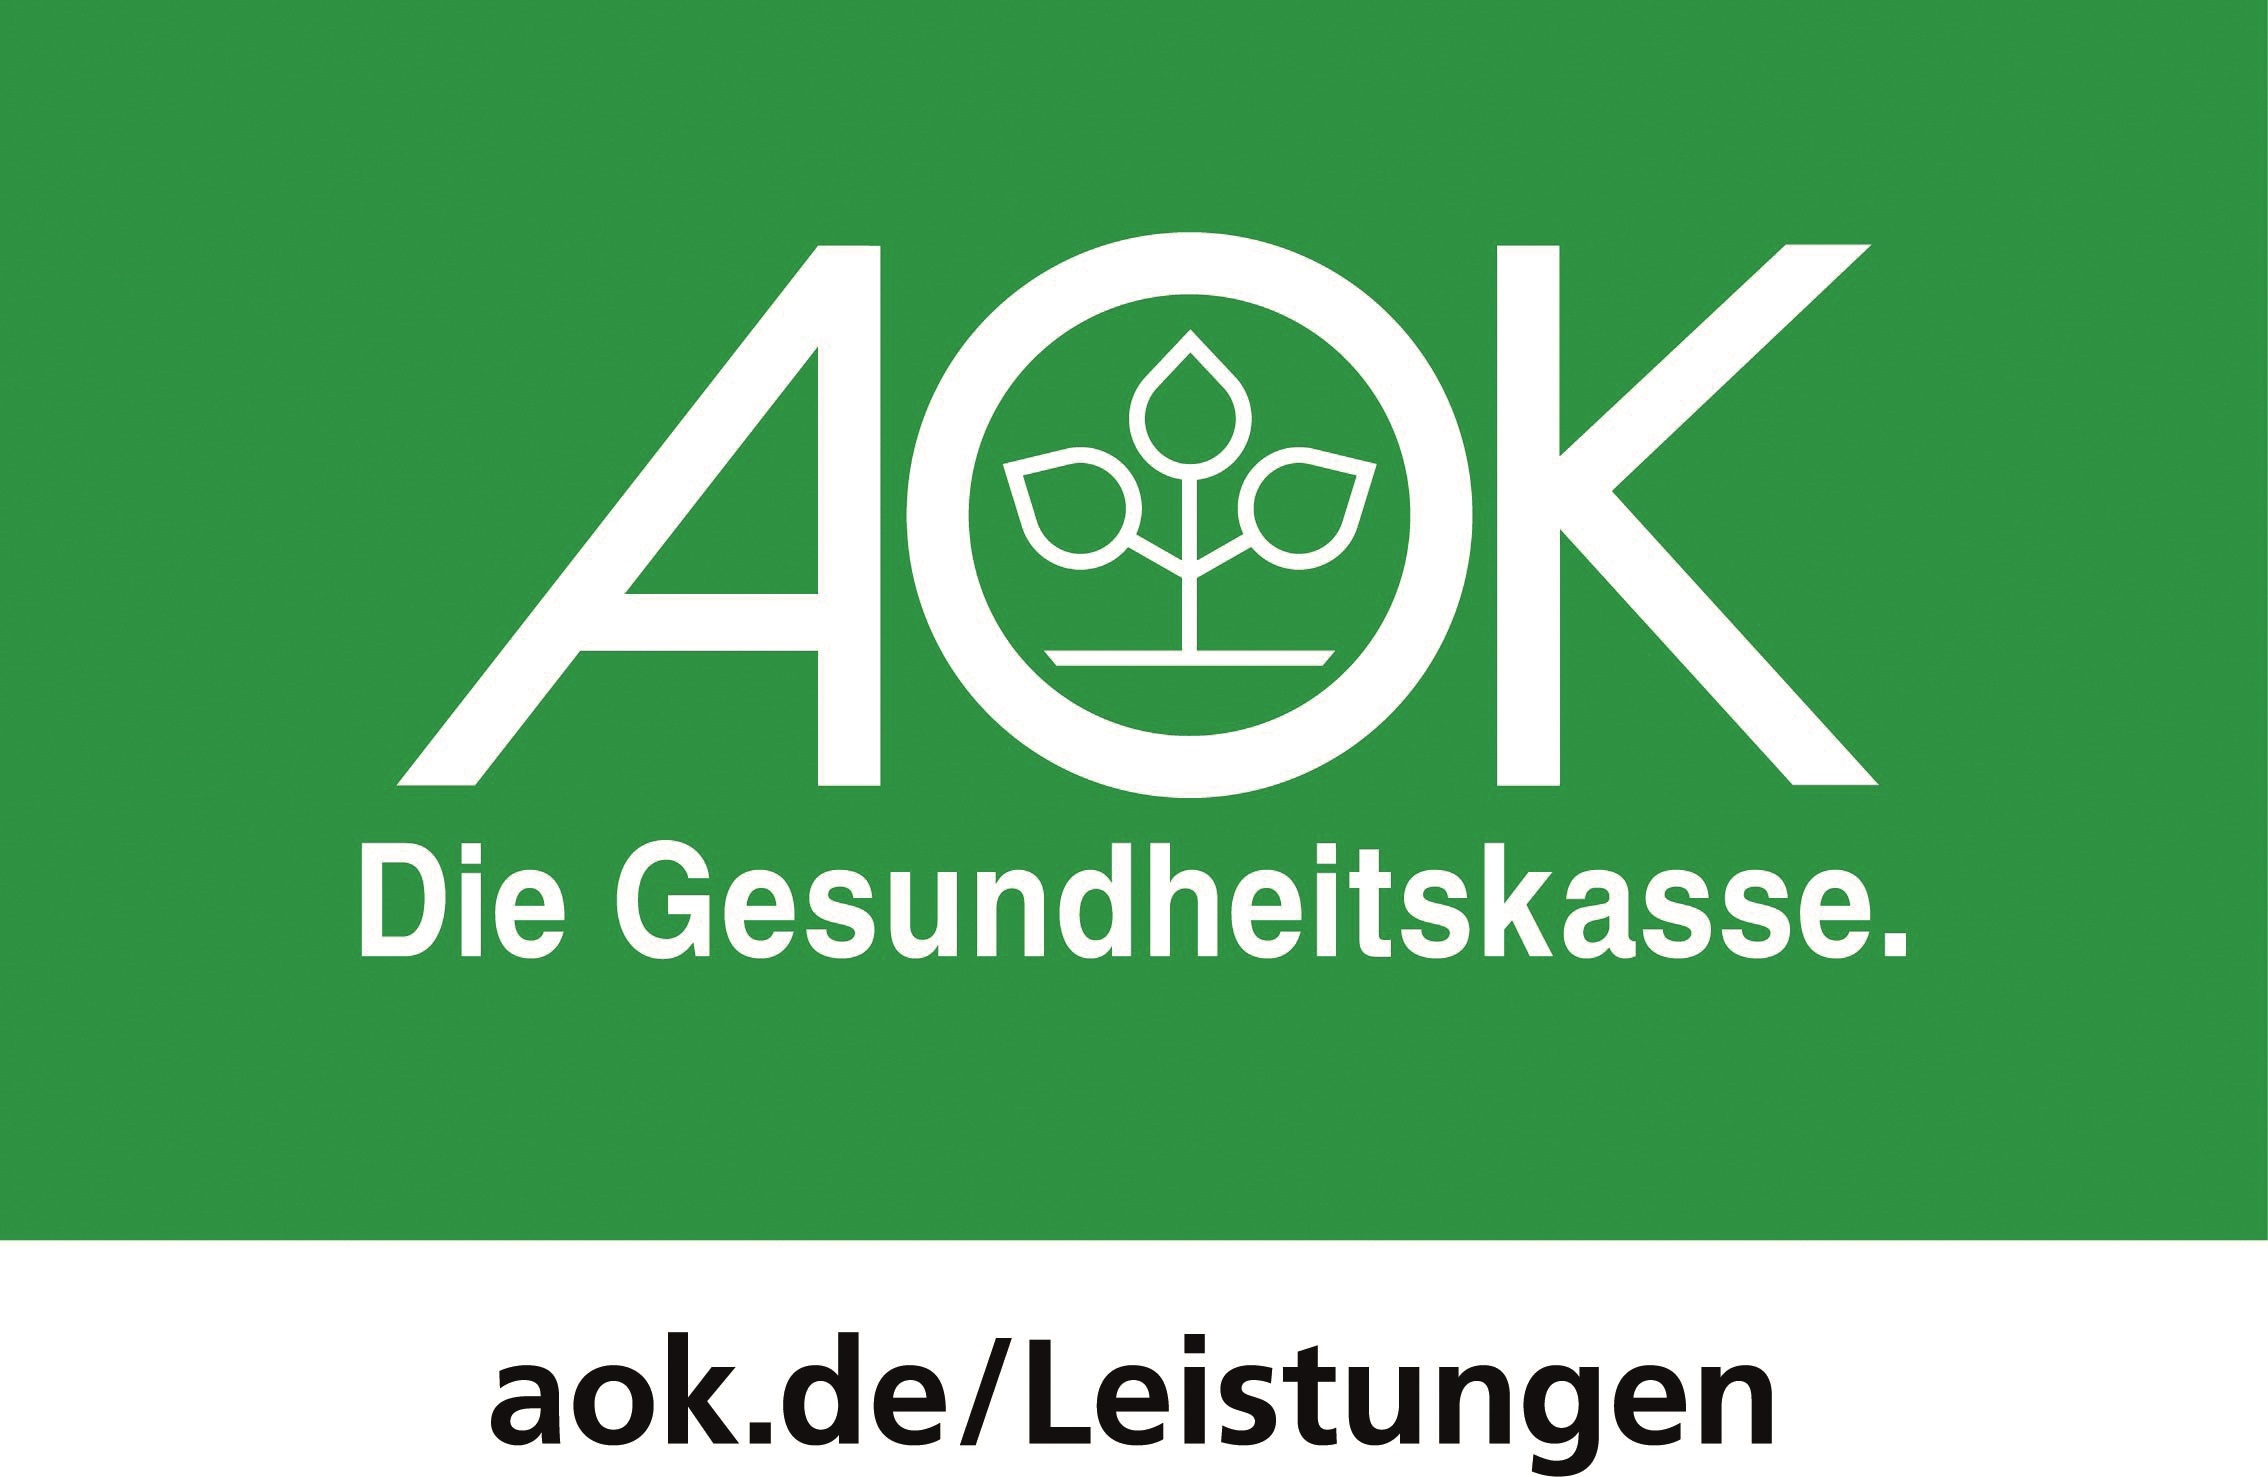 AOK logo